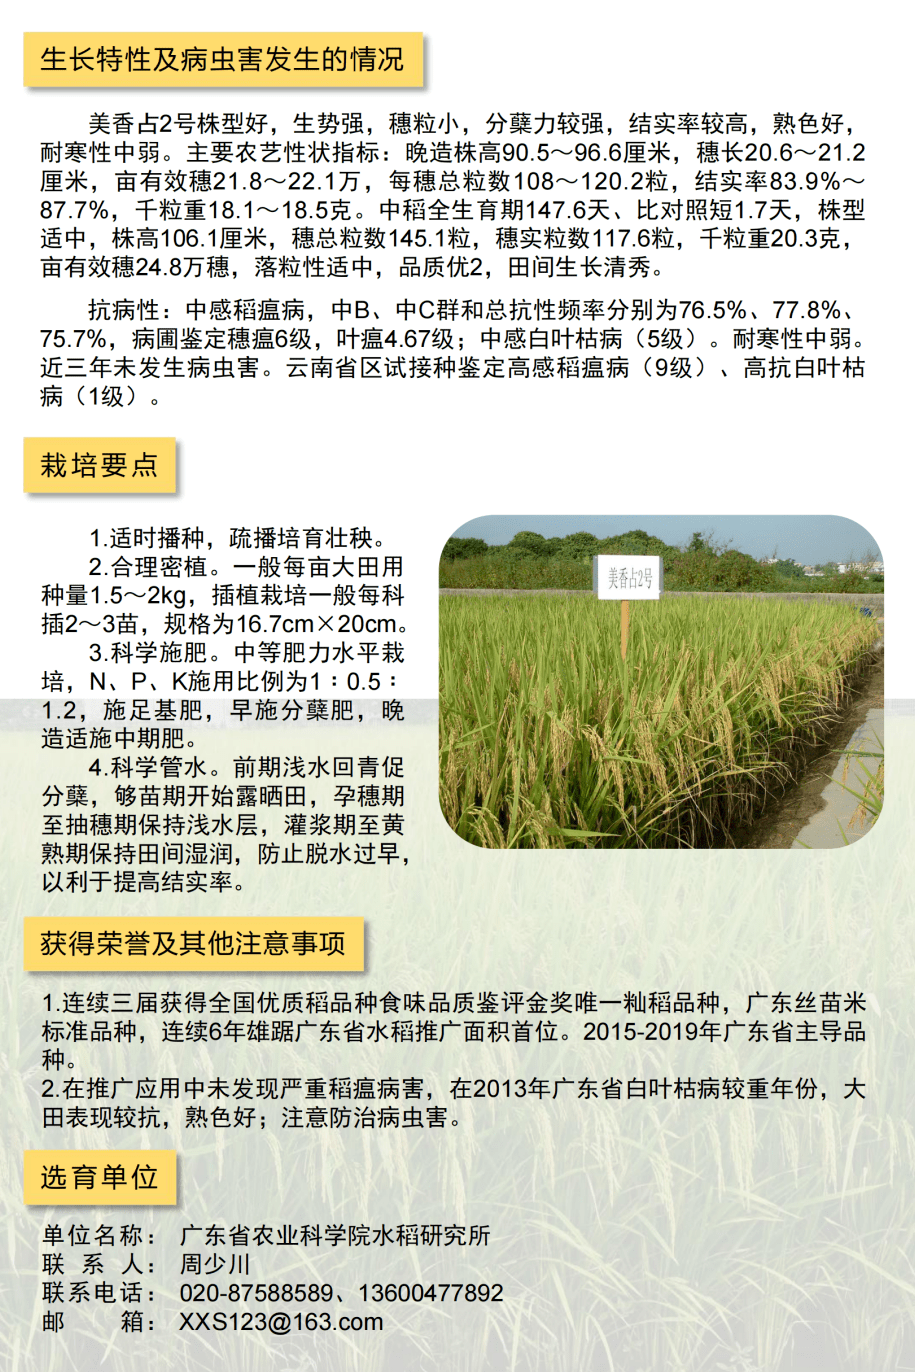 详解一起来看2021年广东省农业主导品种